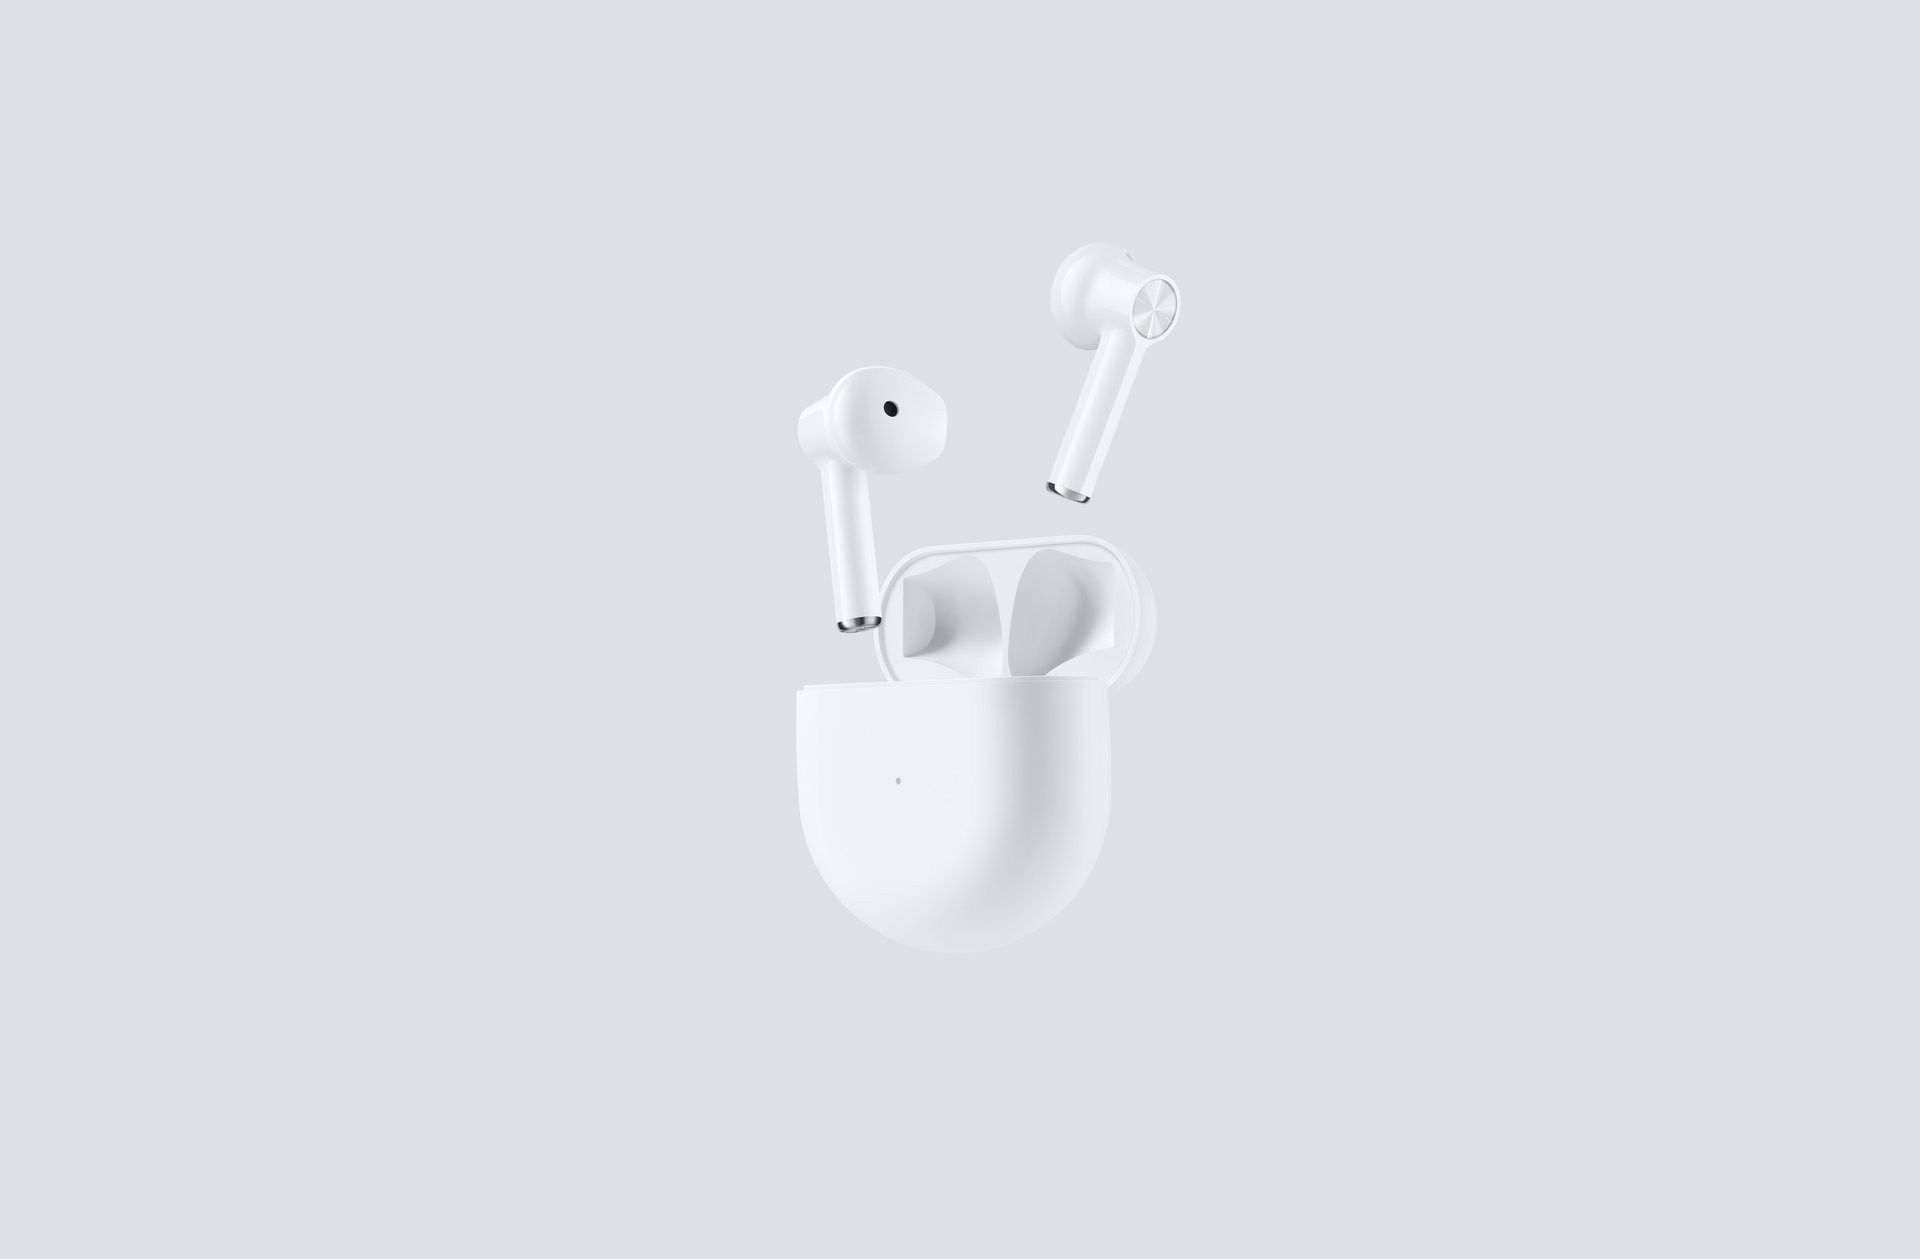 OnePlus Buds kulaklıklar duyuruldu